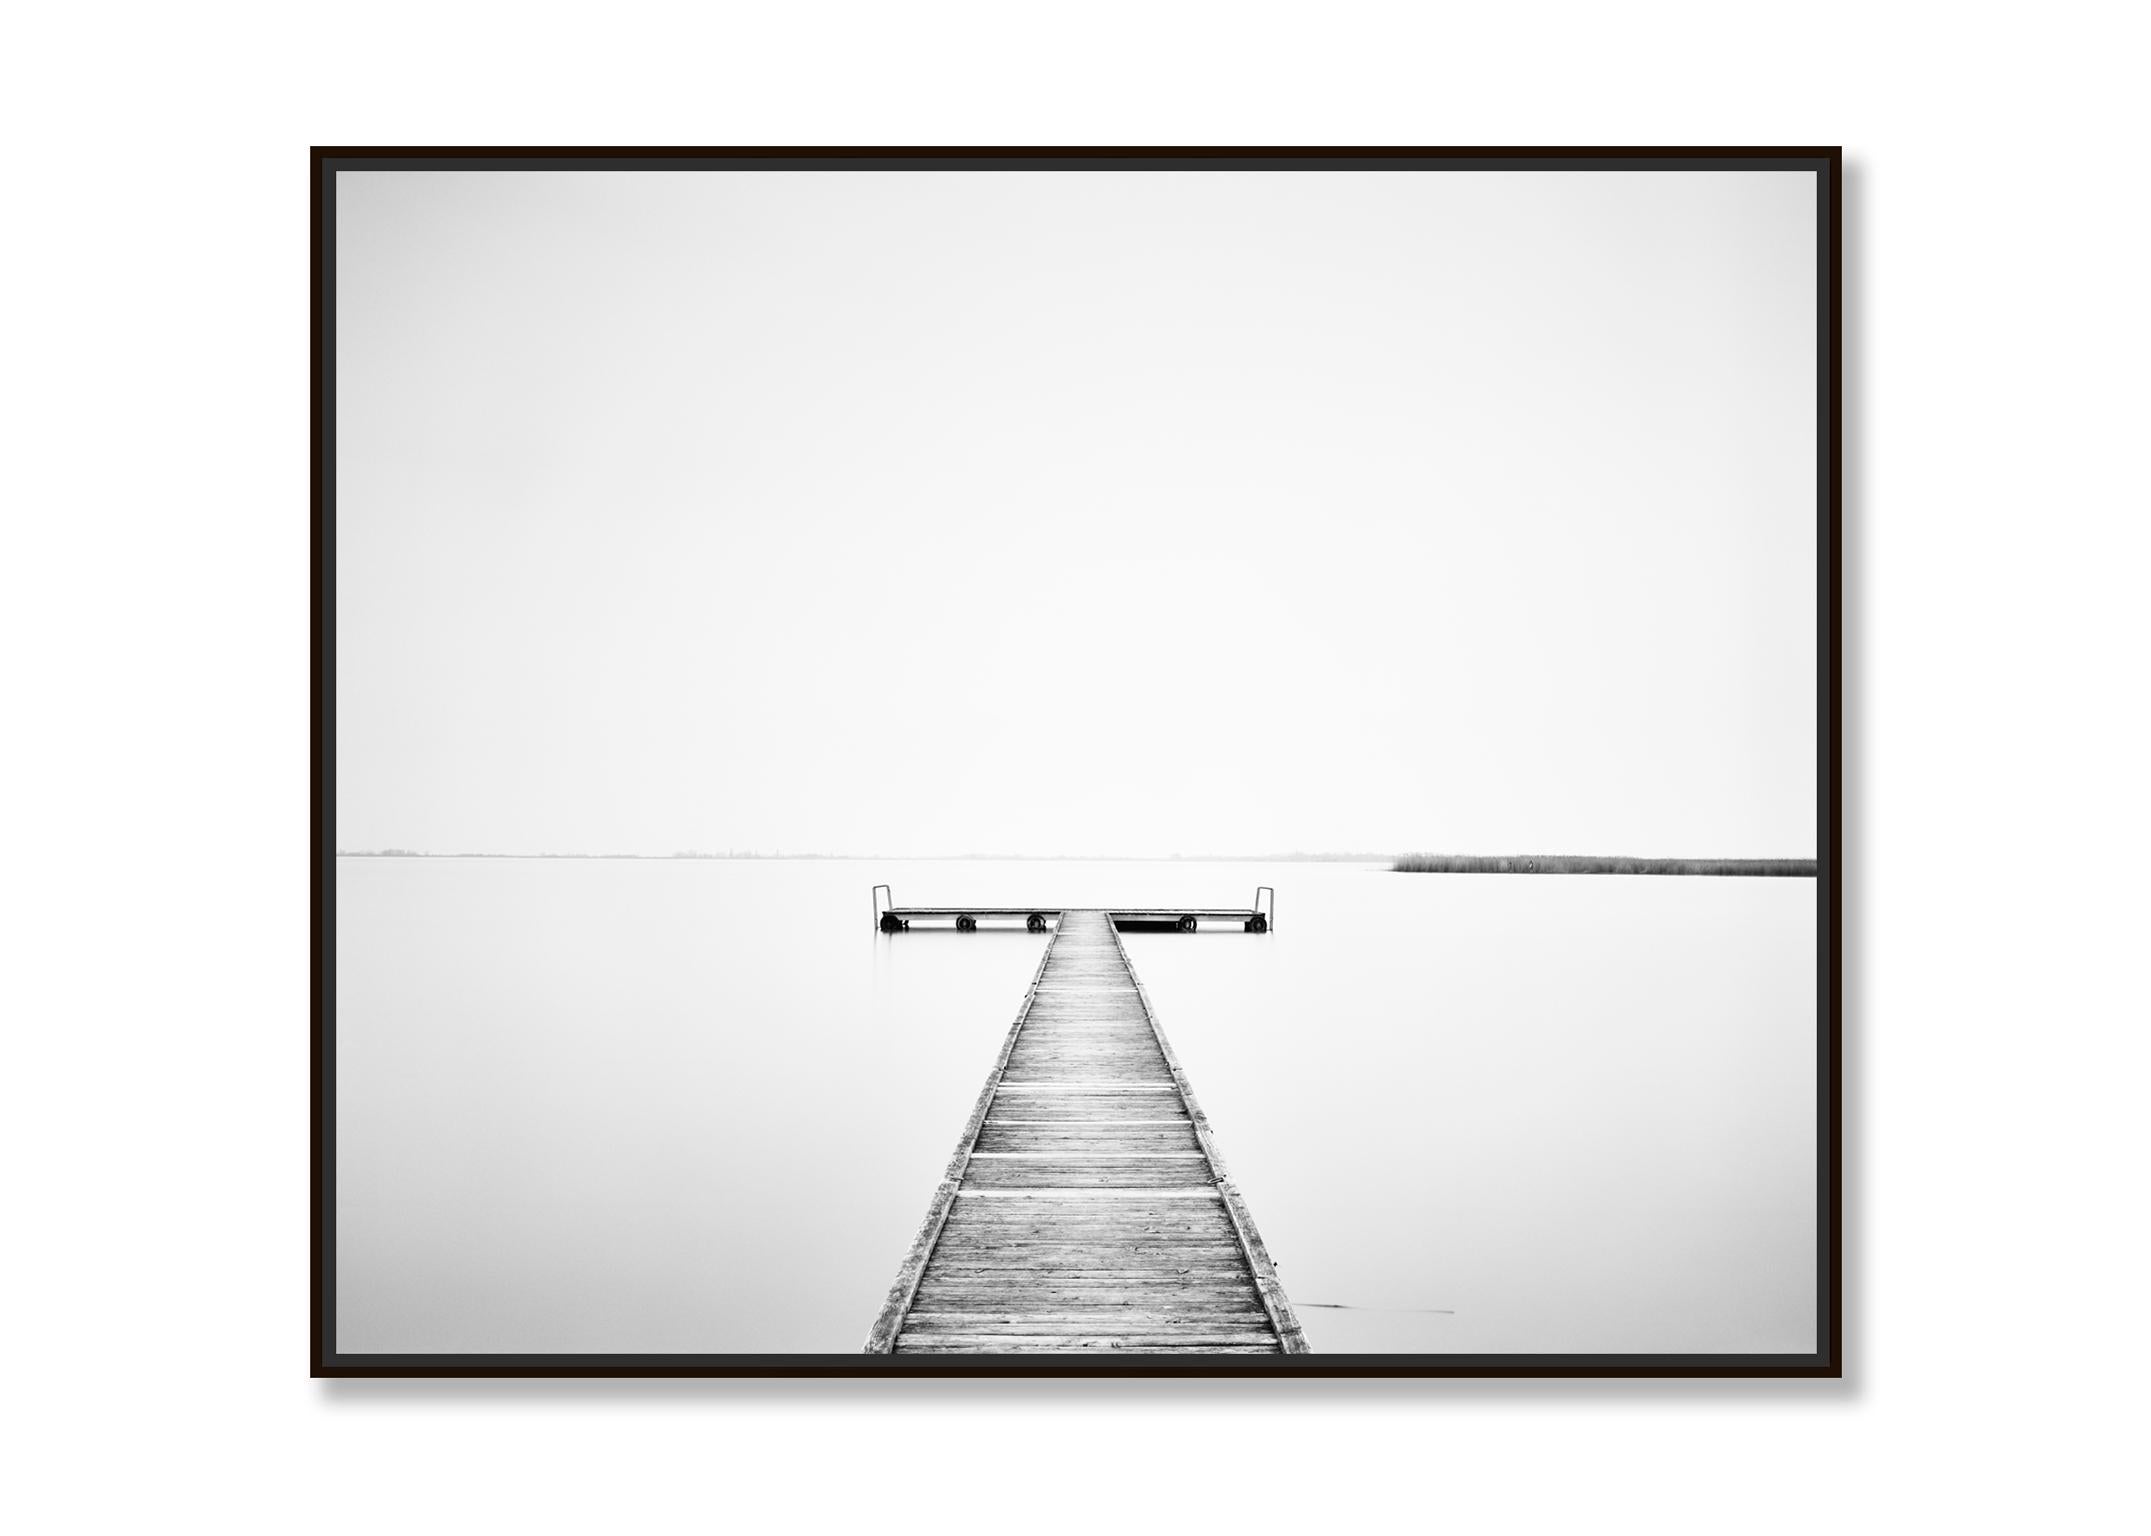 Wood Pier, Österreich, zeitgenössische schwarz-weiße Kunstfotografie Landschaft (Zeitgenössisch), Photograph, von Gerald Berghammer, Ina Forstinger